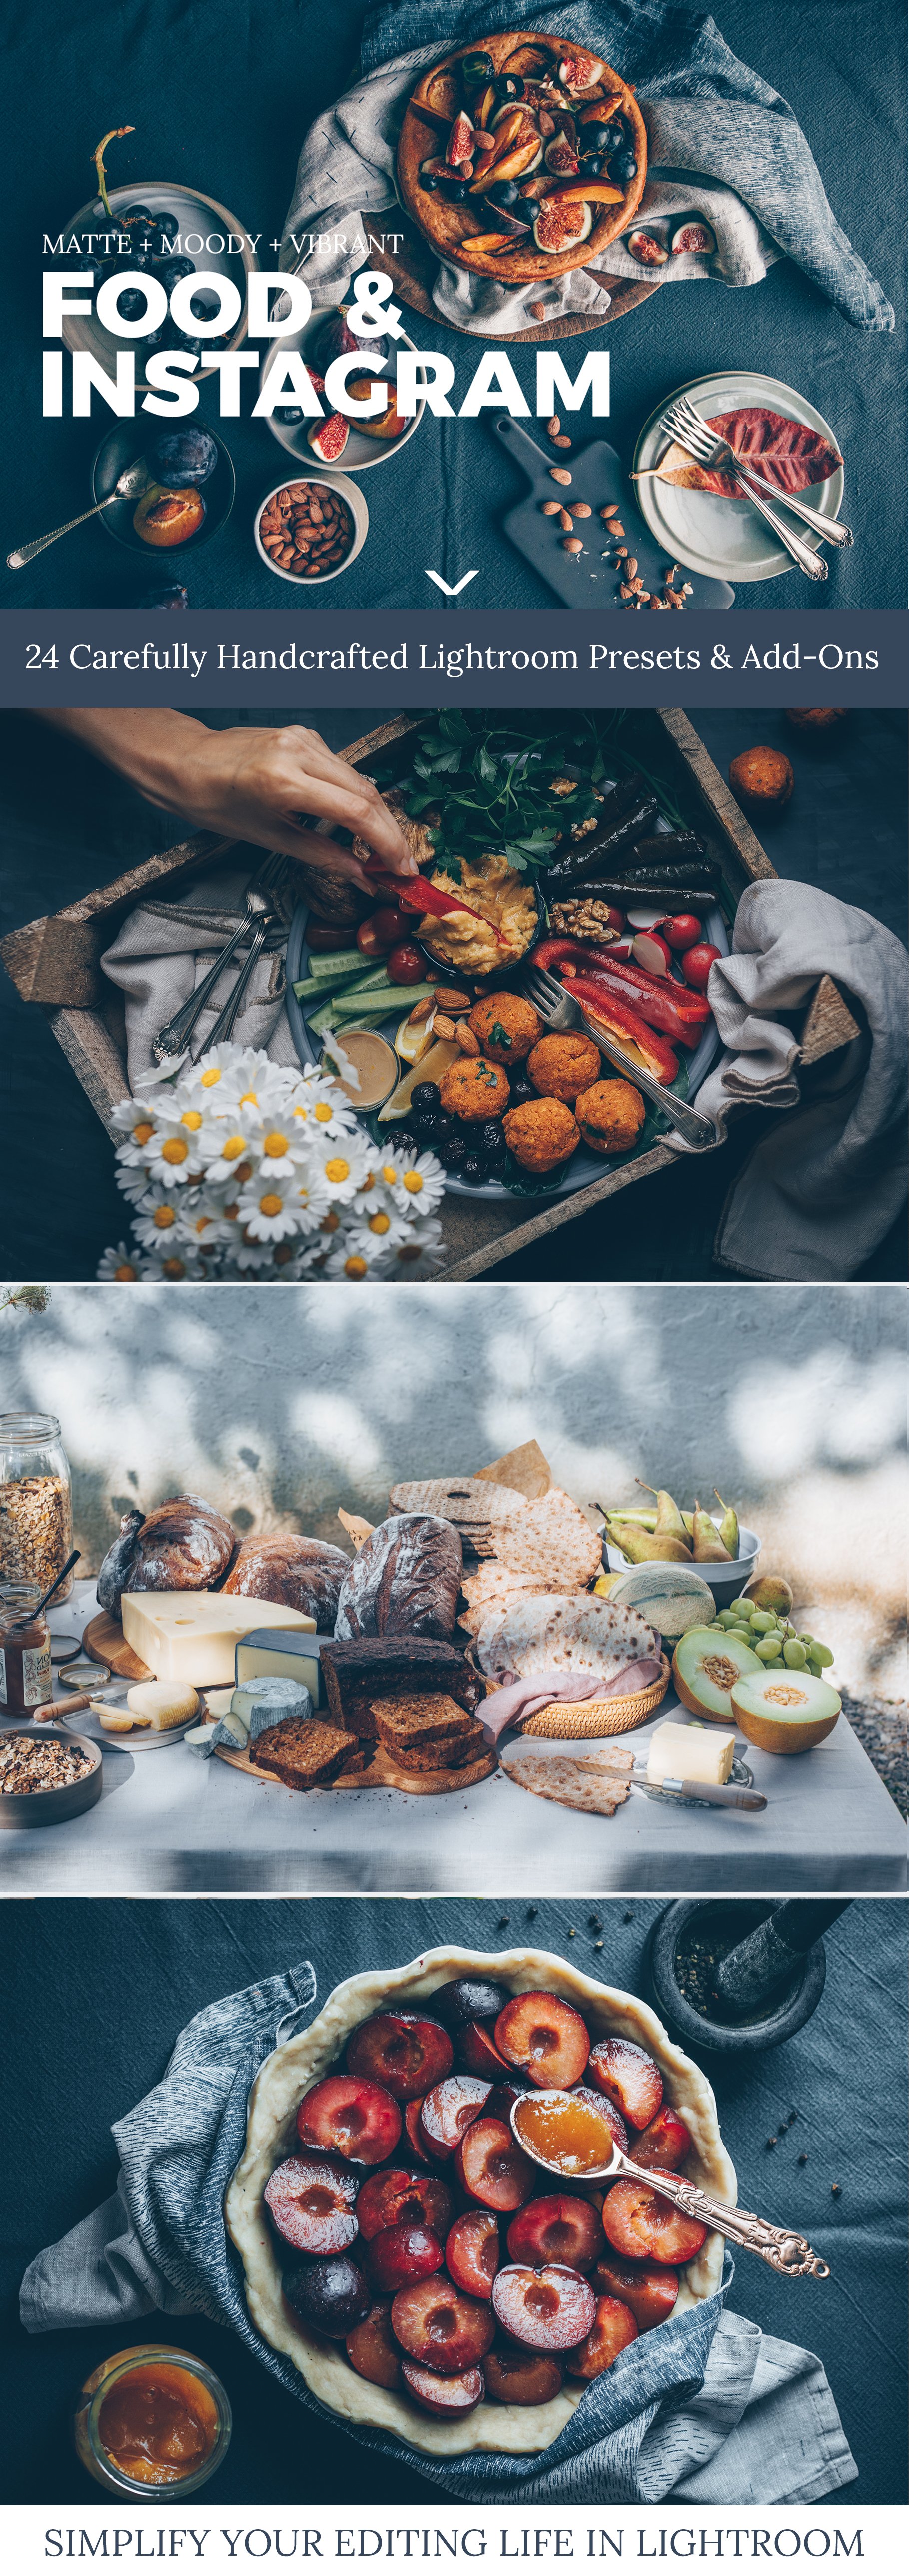 Food & Instagram Lightroom Presetscover image.